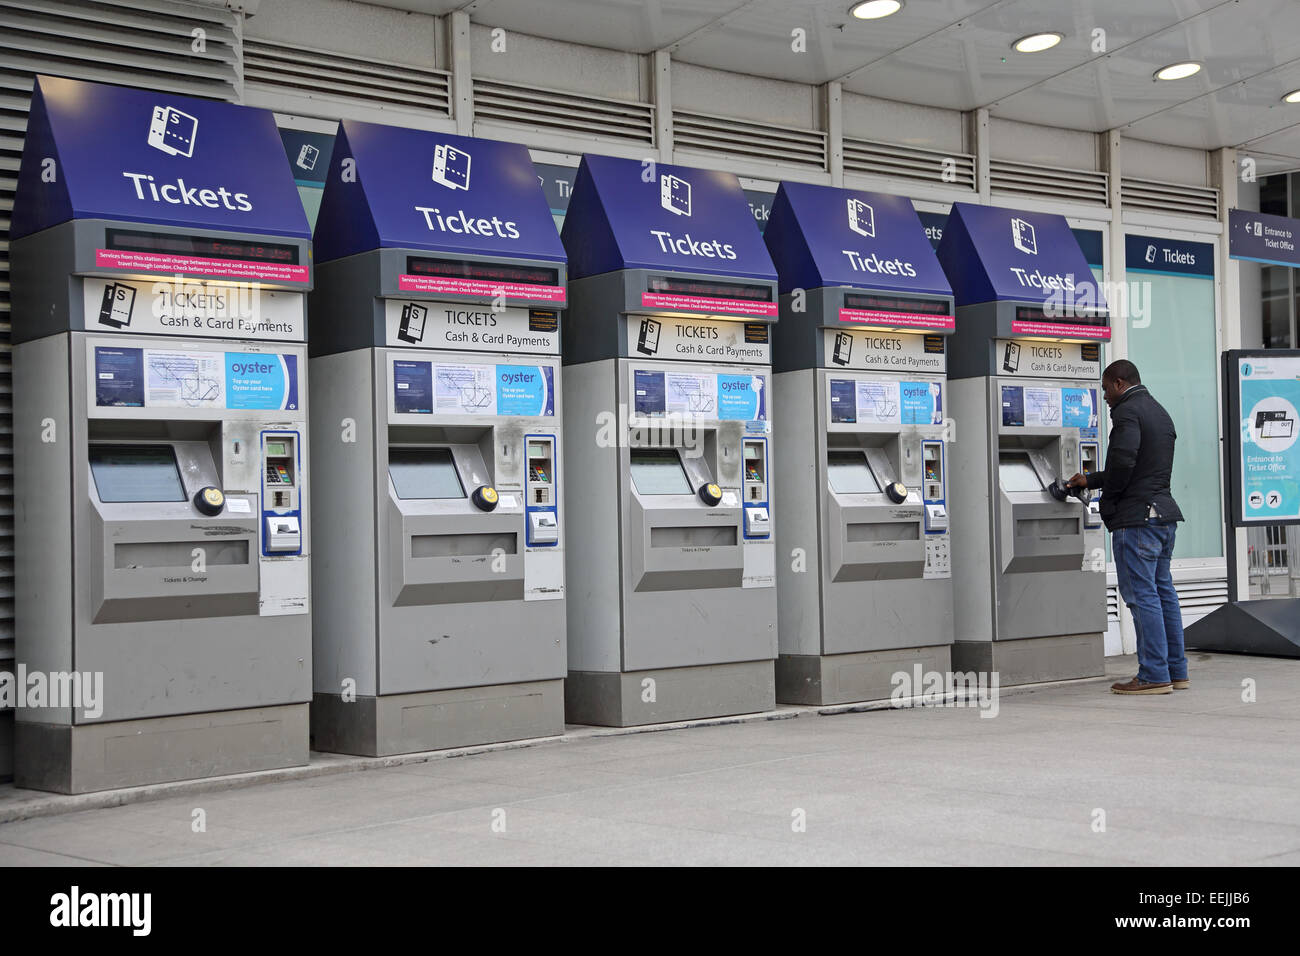 Ein Passagier verwendet eine von 5 Fahrkartenautomaten am Bahnhof London Bridge Stockfoto